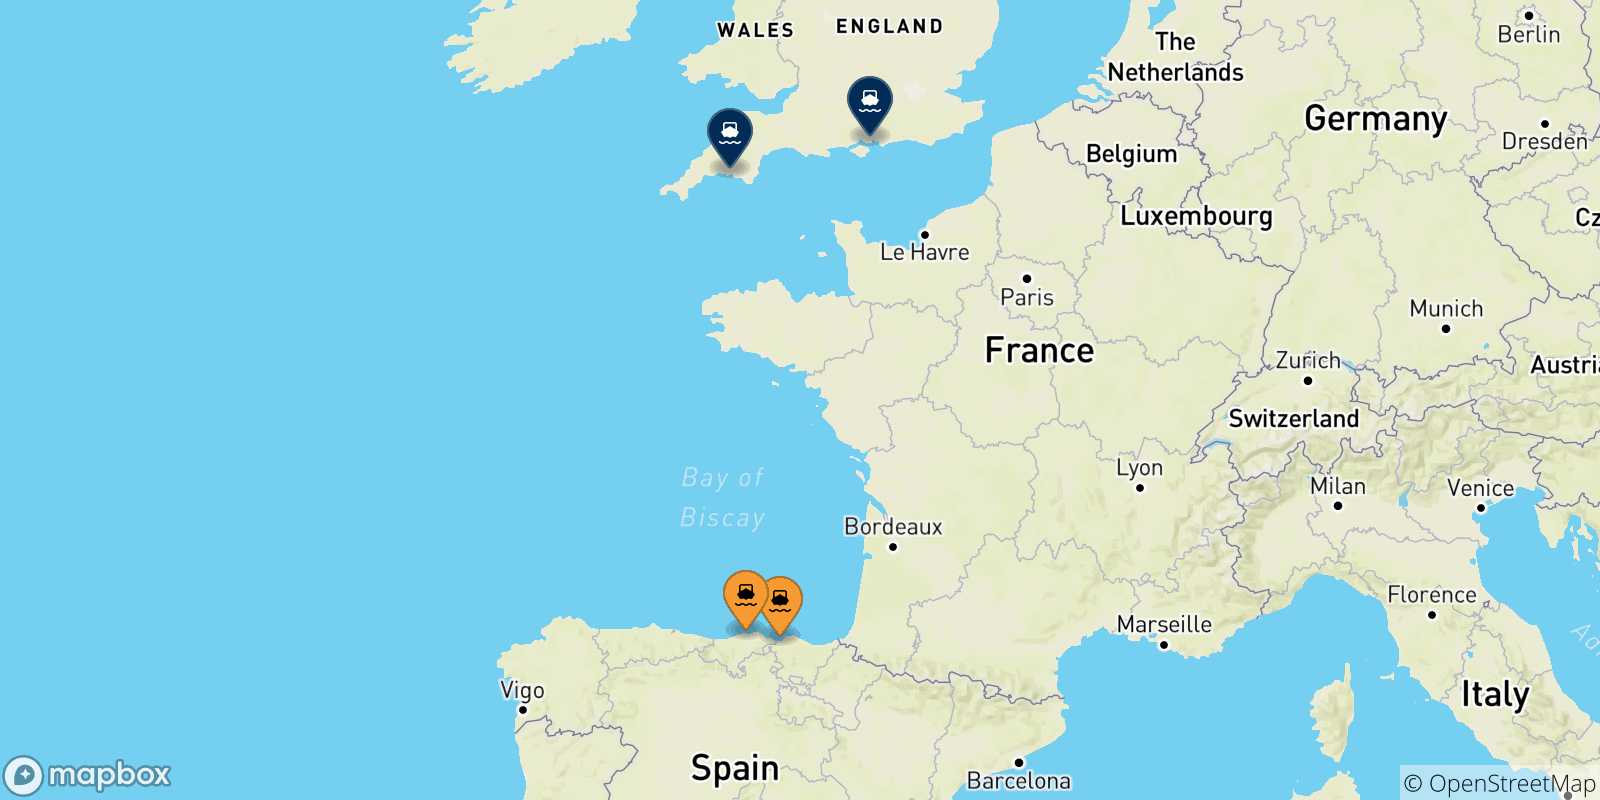 Mappa delle possibili rotte tra la Spagna e il Regno Unito